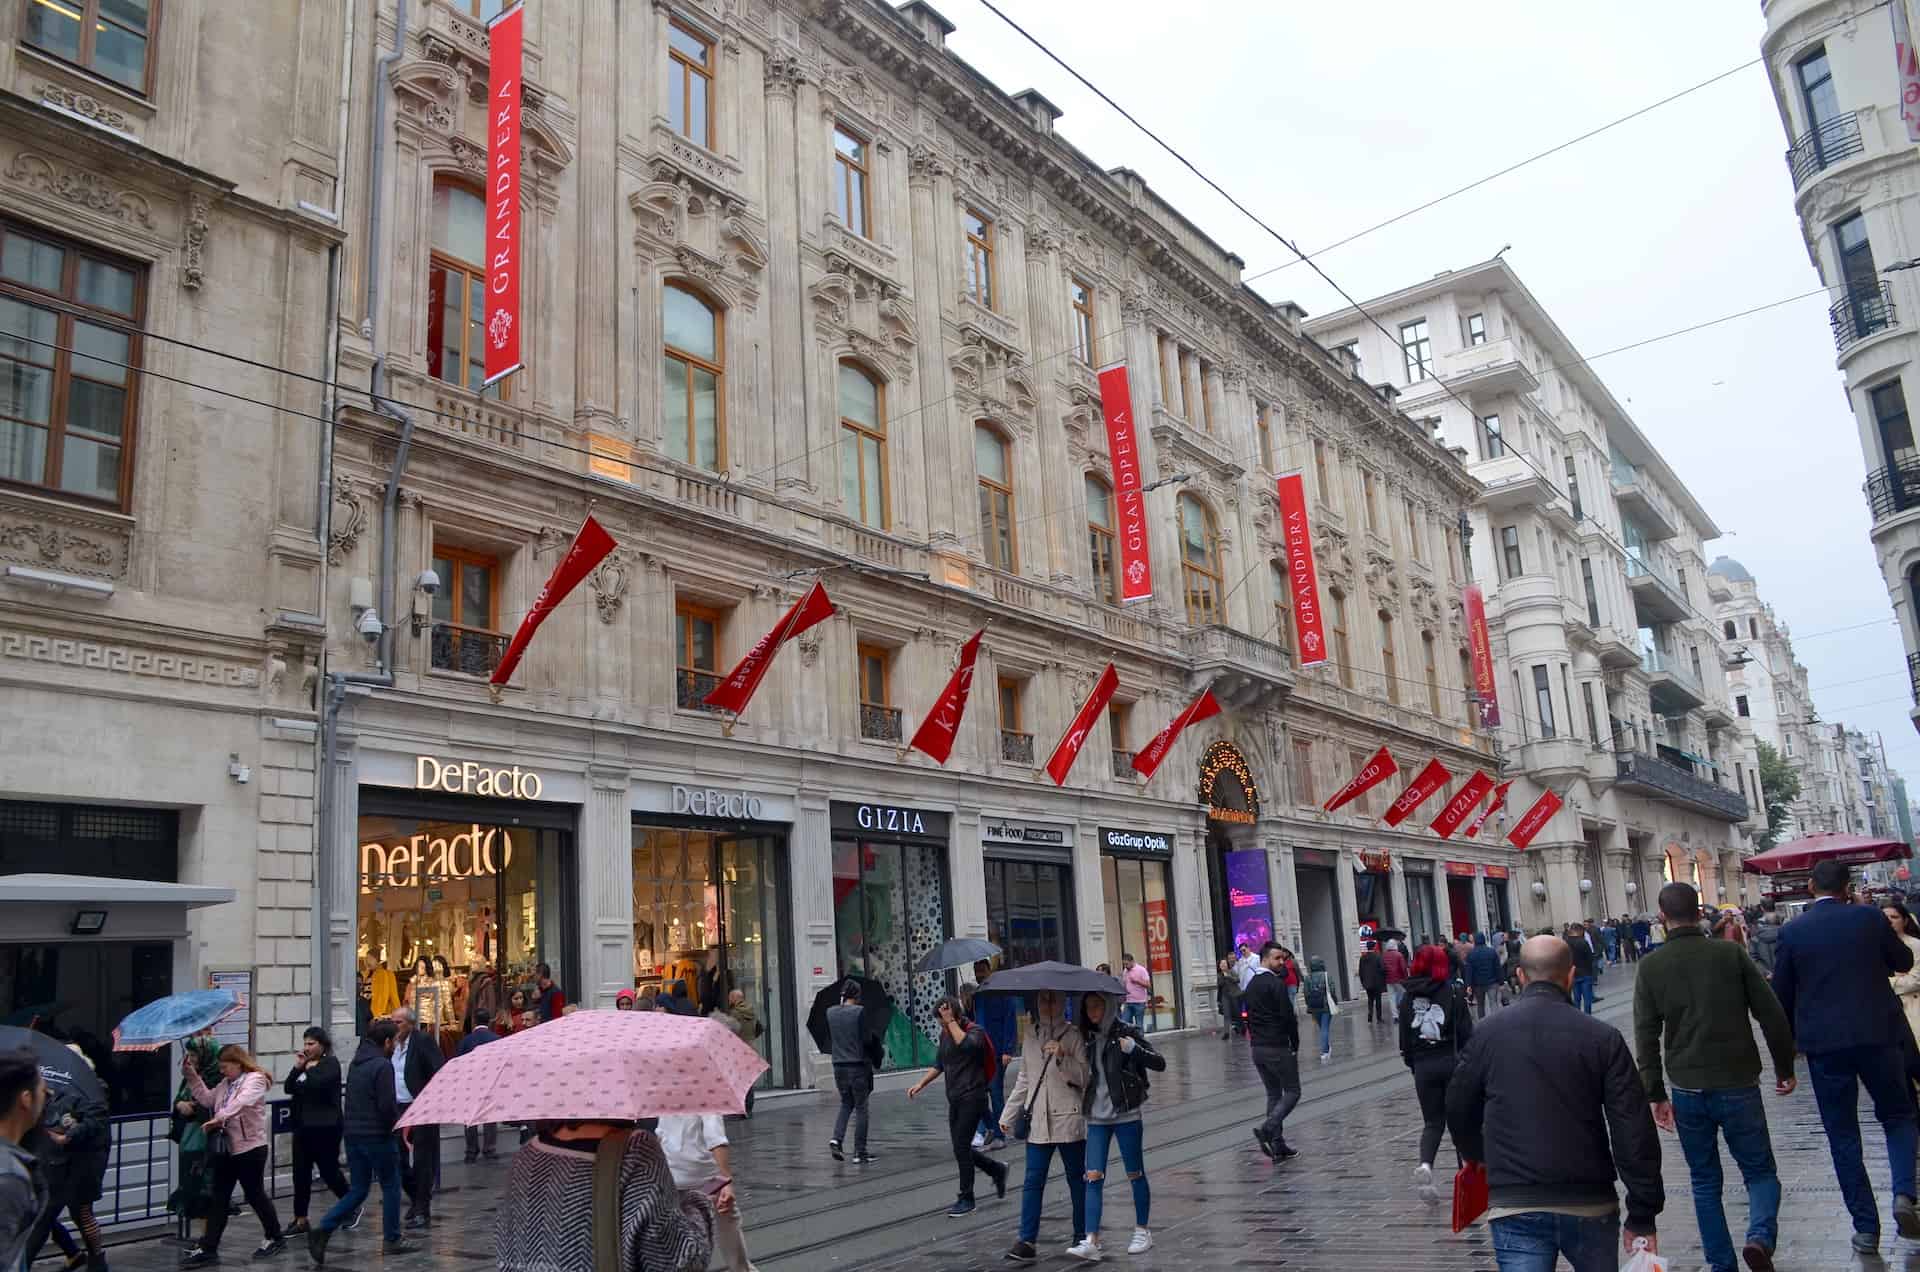 Grand Pera Mall on Istiklal Street in Istanbul, Turkey